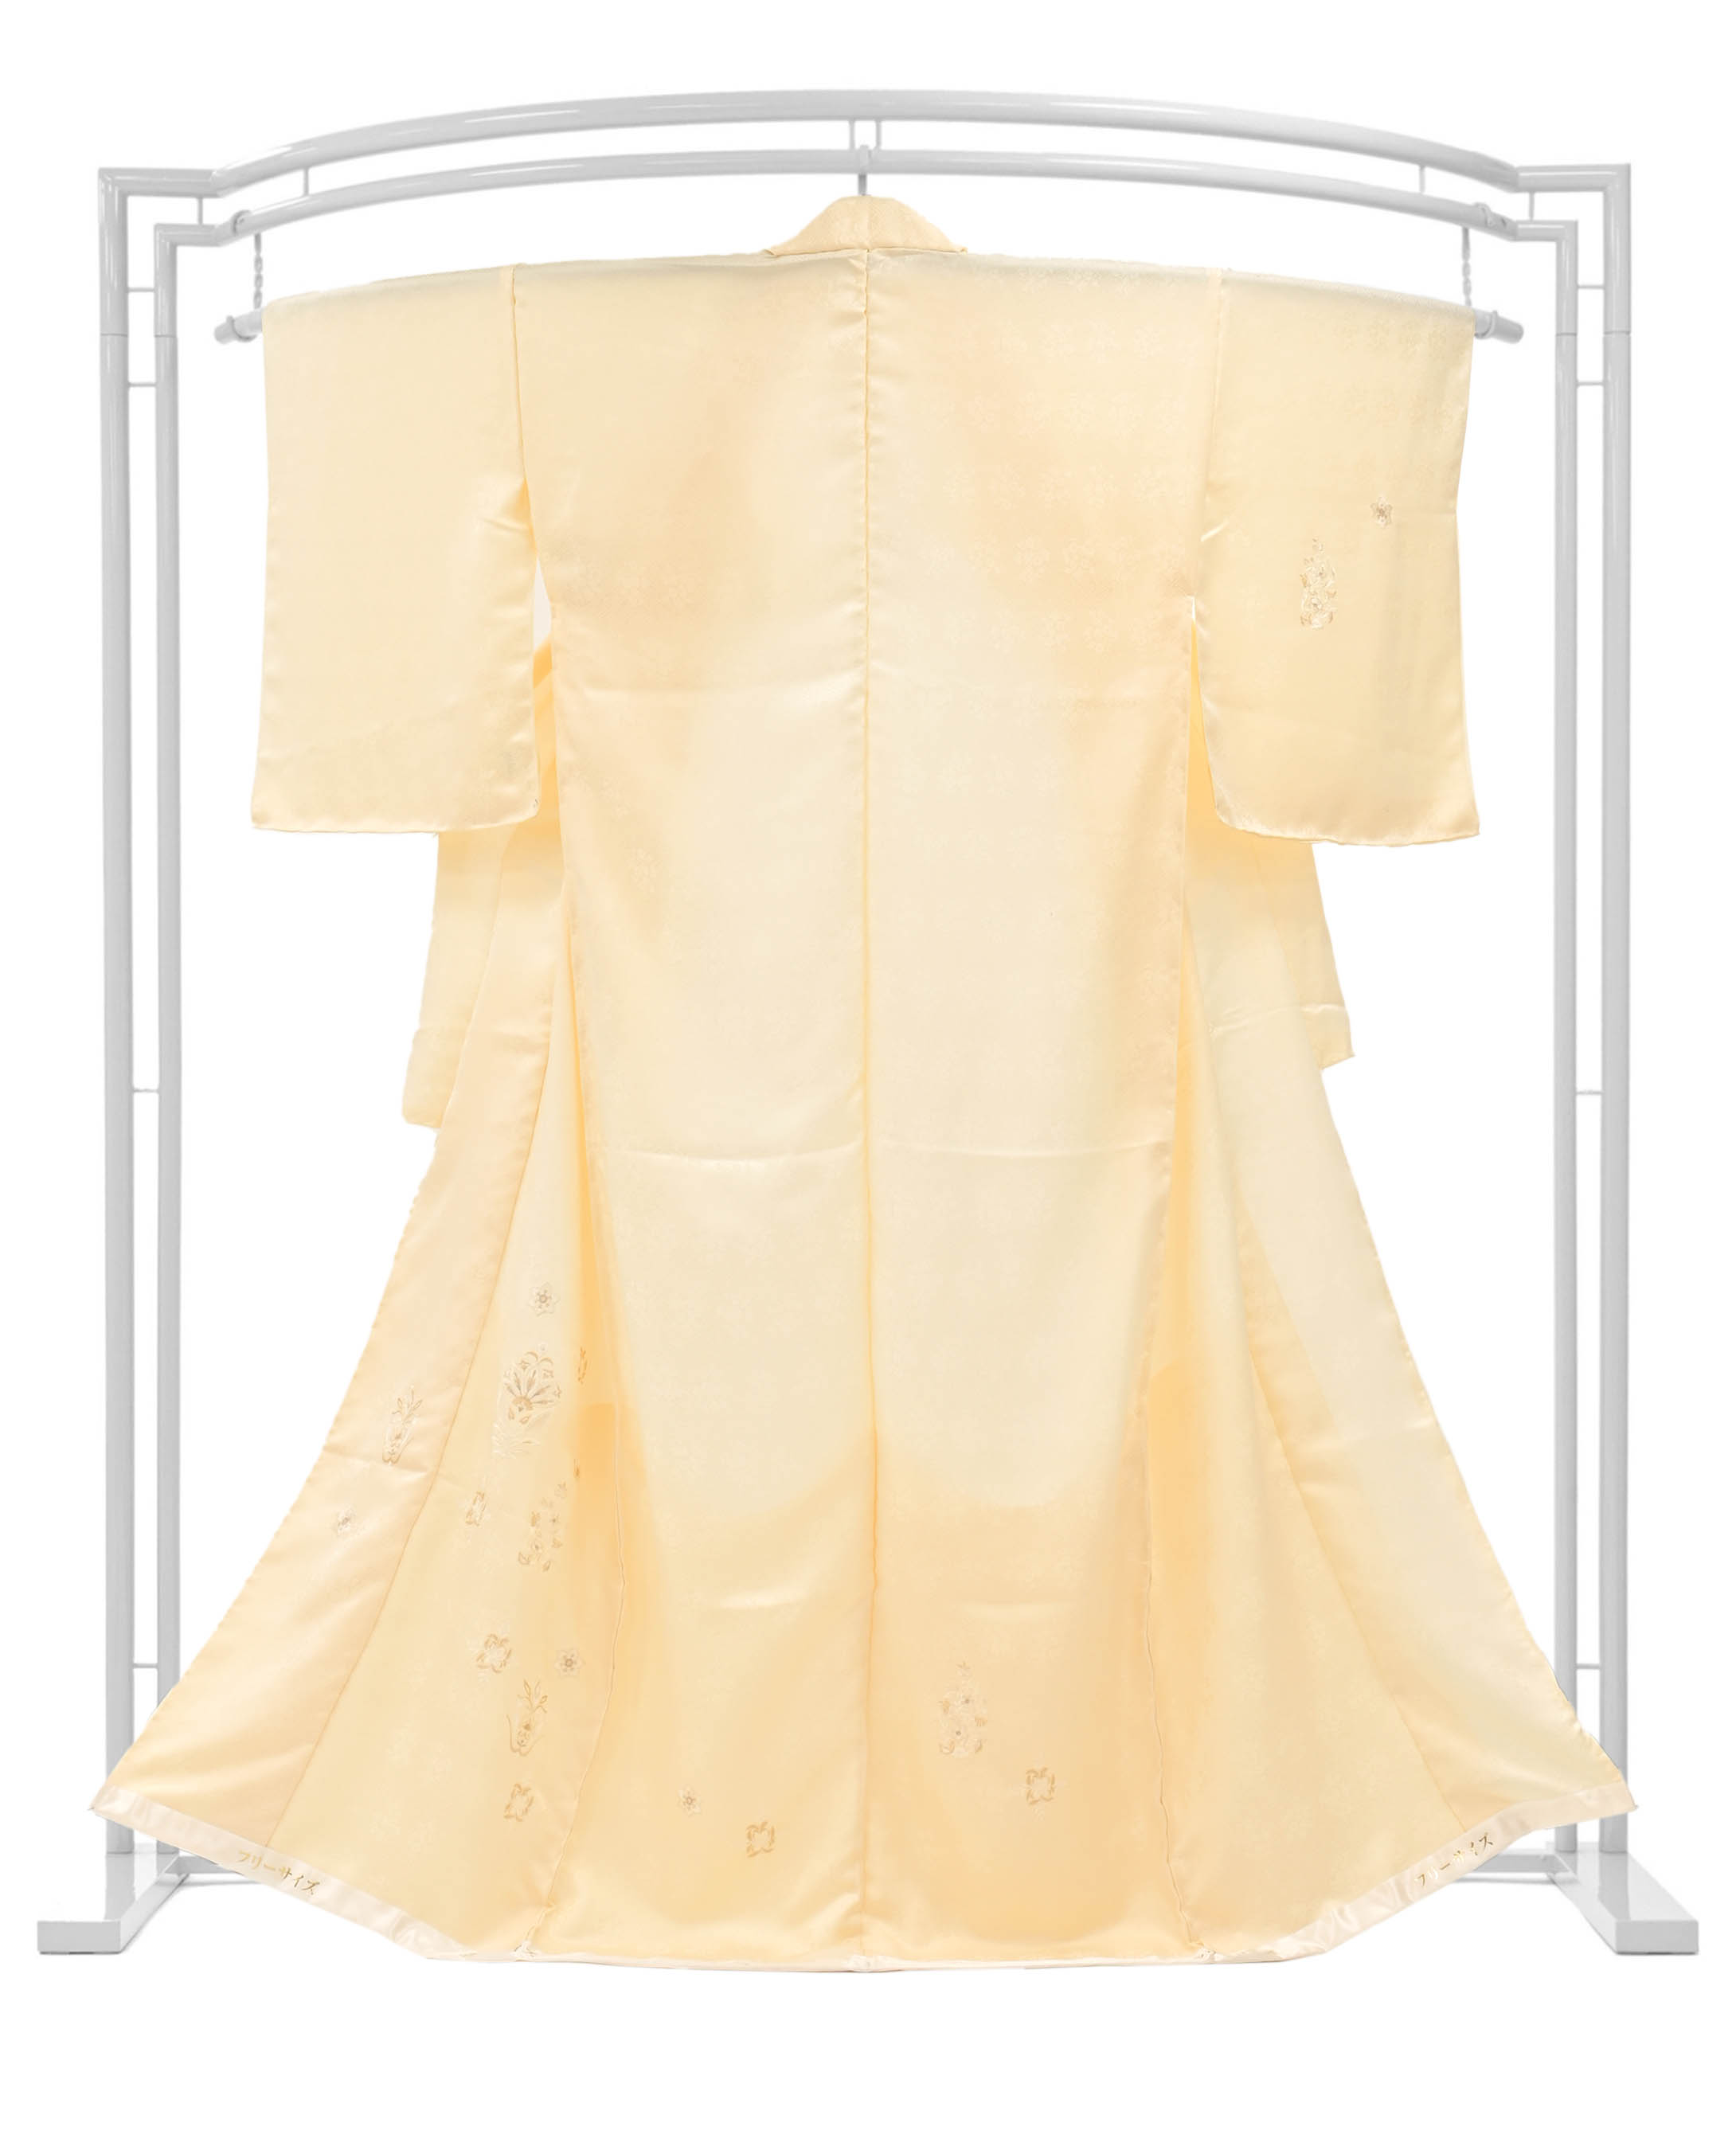 【京の染匠】 正絹刺繍訪問着 「欧風唐花文様　蜂蜜色」 エレガントな和のドレス…。 寸法大きめの方へも！